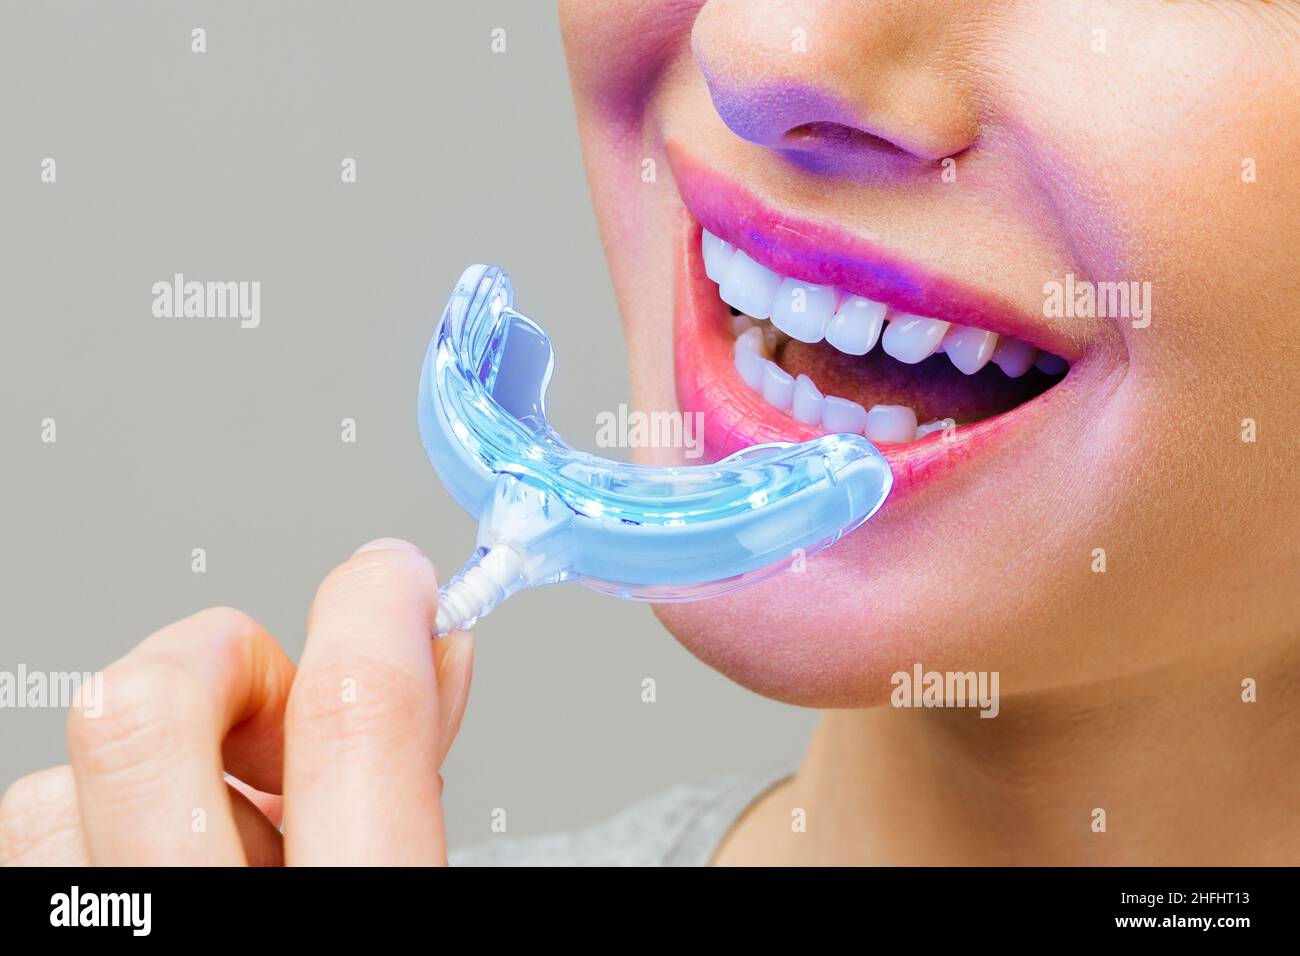 Une jeune femme est engagée dans le blanchiment des dents à la maison. Complexe pour le blanchiment des dents avec lampe UV Banque D'Images